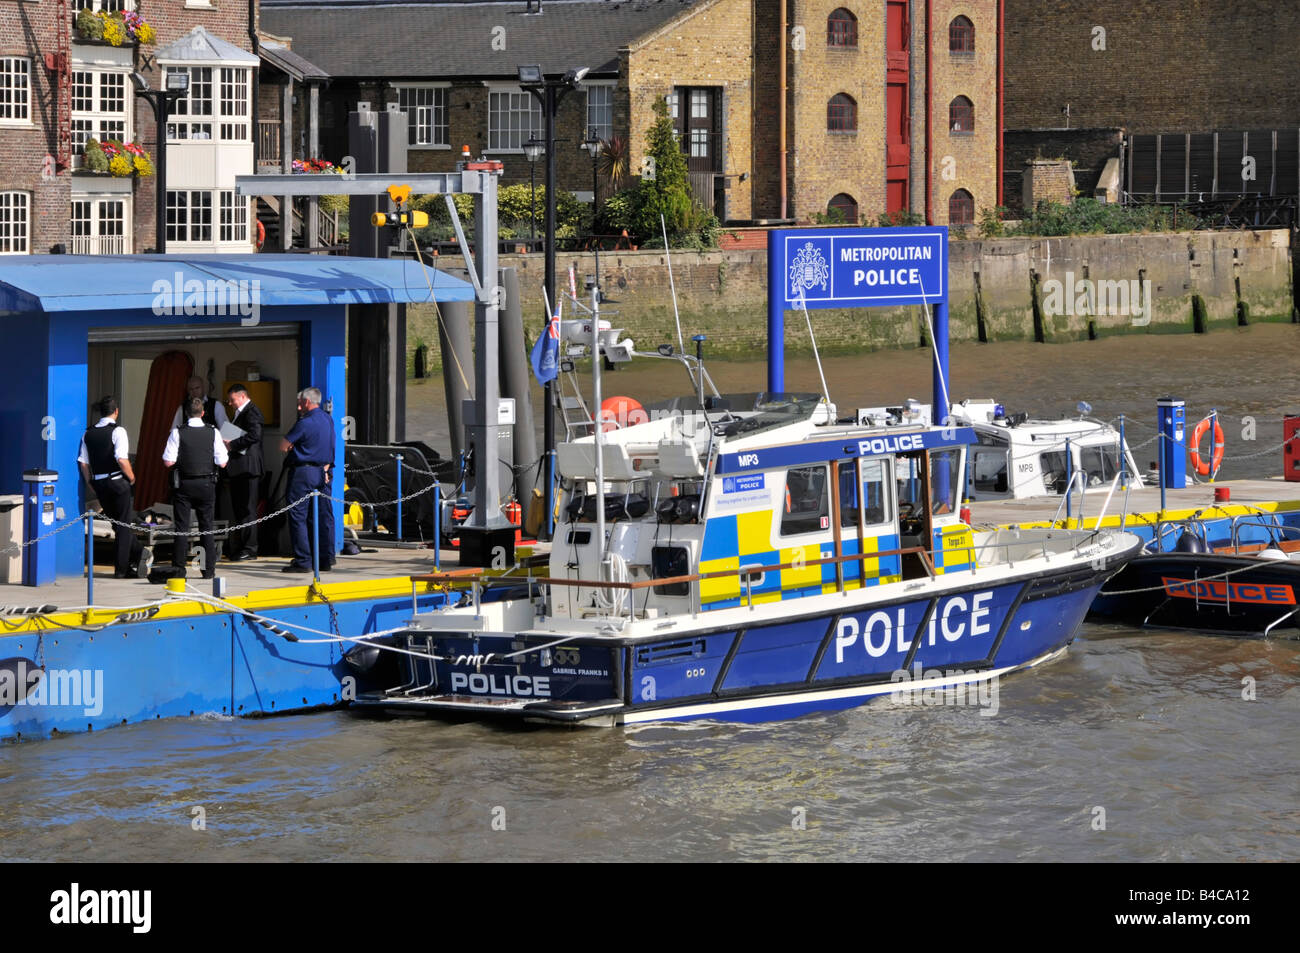 Metropolitan Police at Work lungo il fiume Wapping Police Station piattaforma di attracco in parte sede della polizia fluviale East London Inghilterra Regno Unito Foto Stock